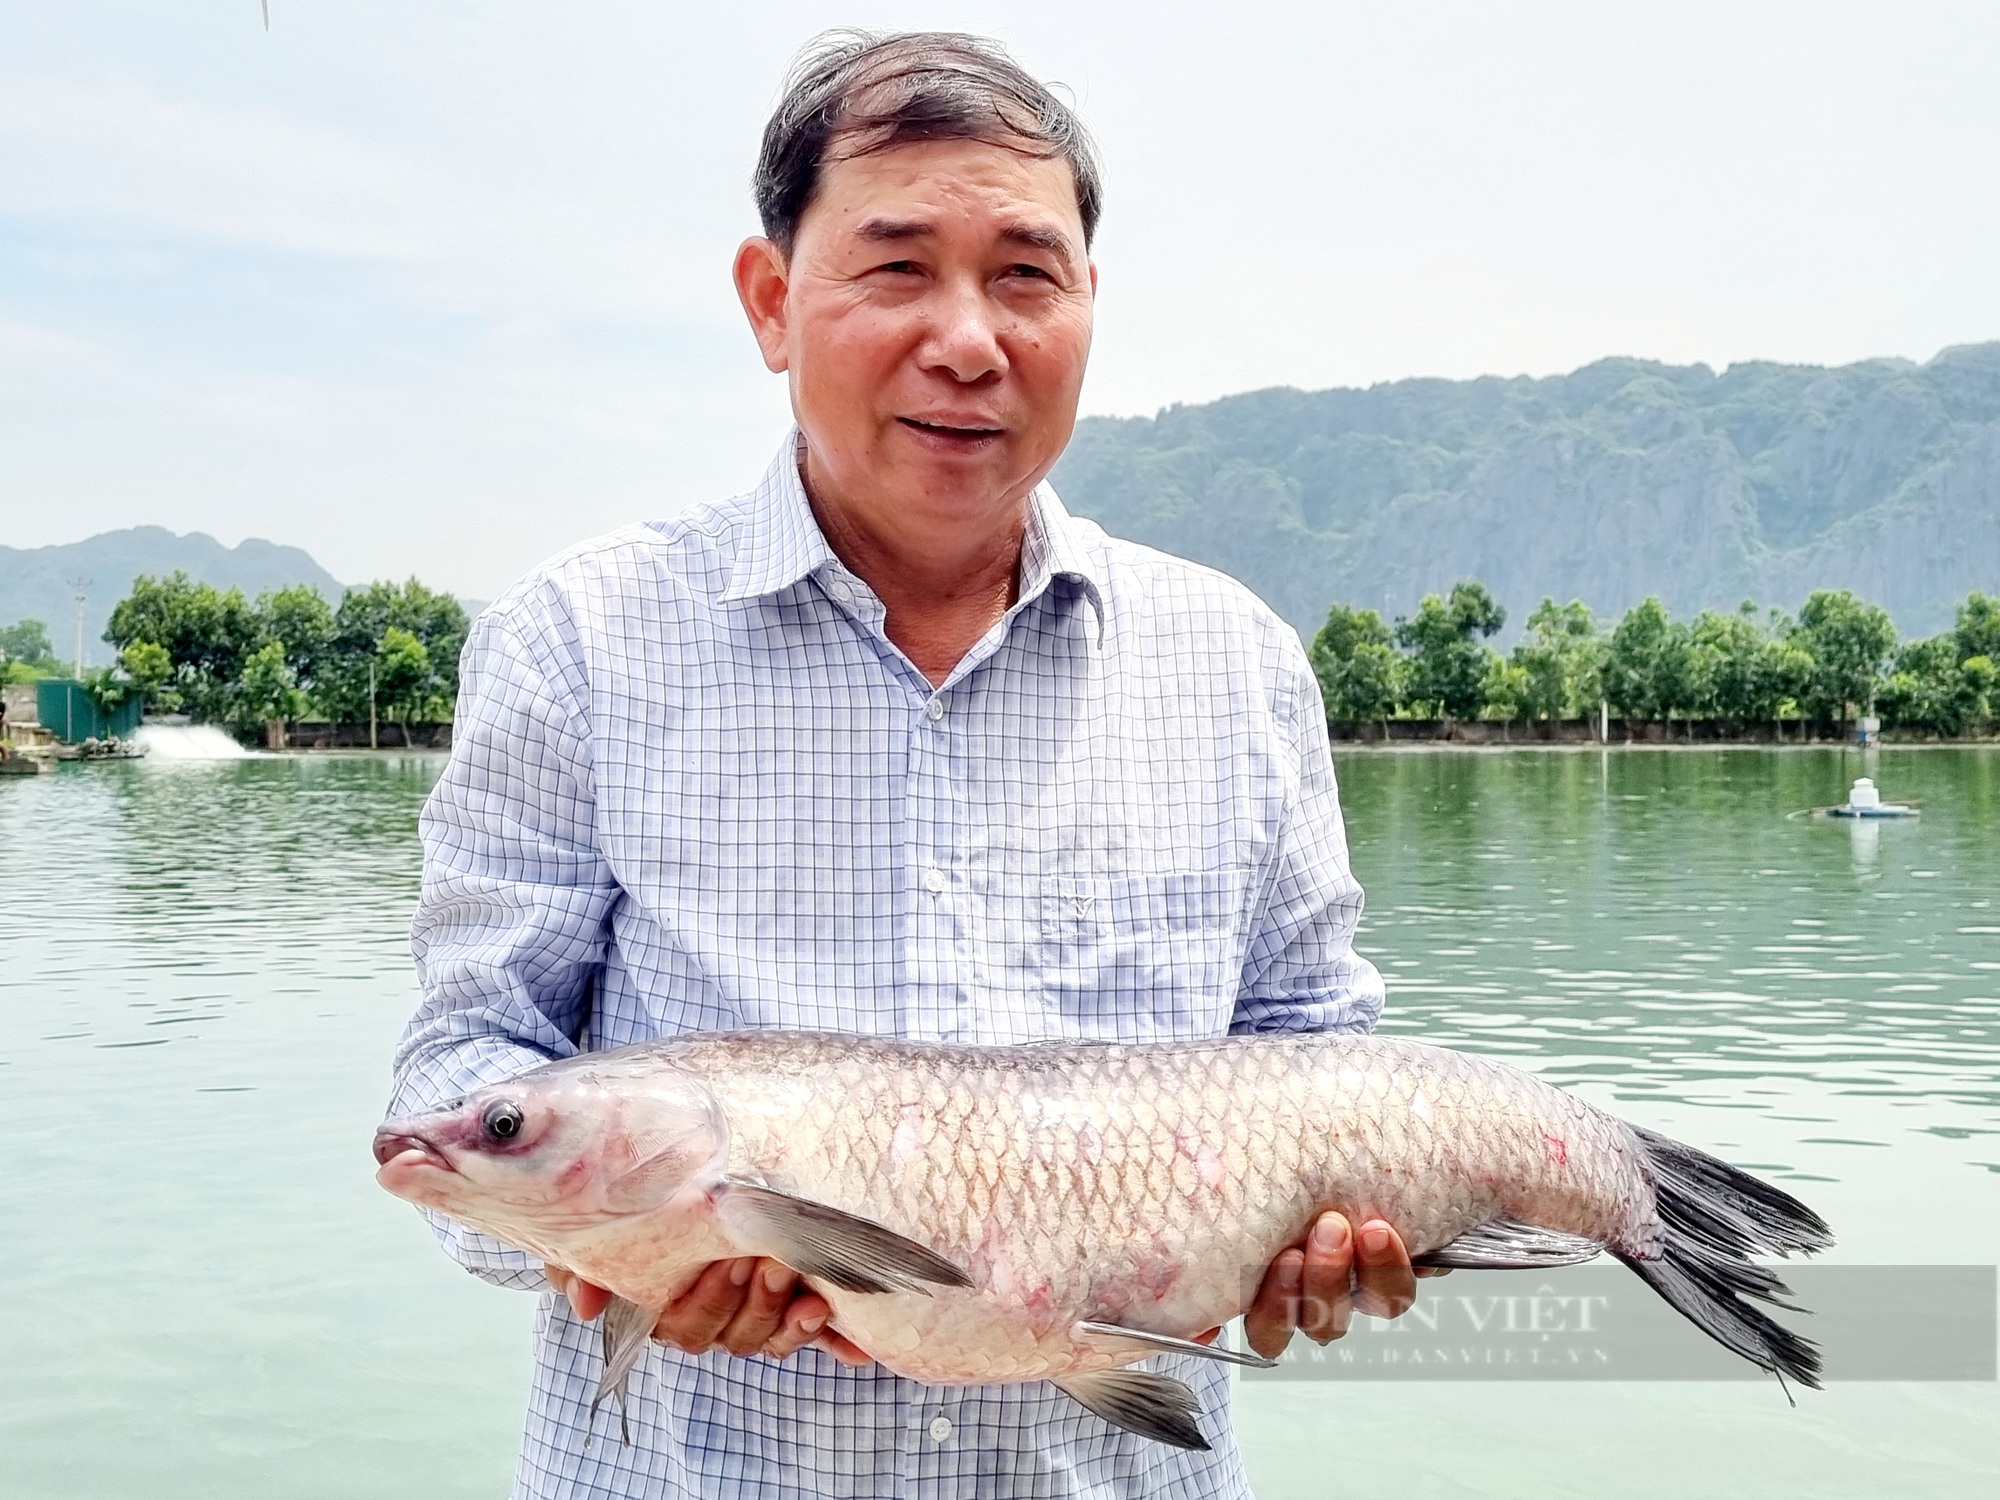 Chuyển đổi số trong nuôi cá nước ngọt, nông dân Việt Nam xuất sắc 2023 ở Ninh Bình có doanh thu gần 4 tỷ đồng - Ảnh 2.